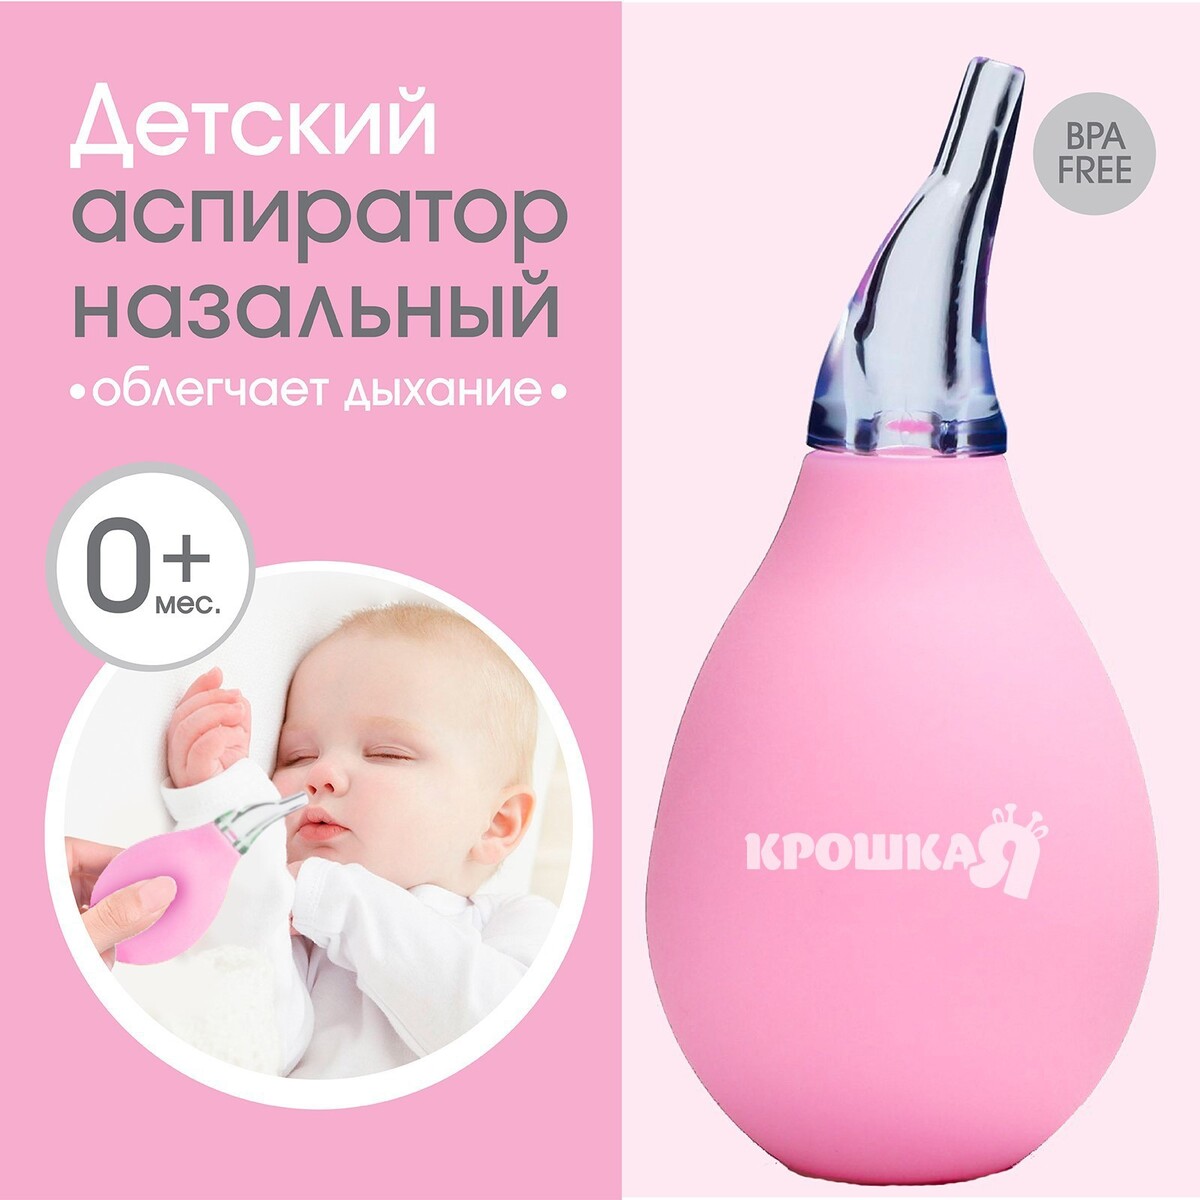 Детский назальный аспиратор, цвет розовый аспиратор baby vac назальный детский